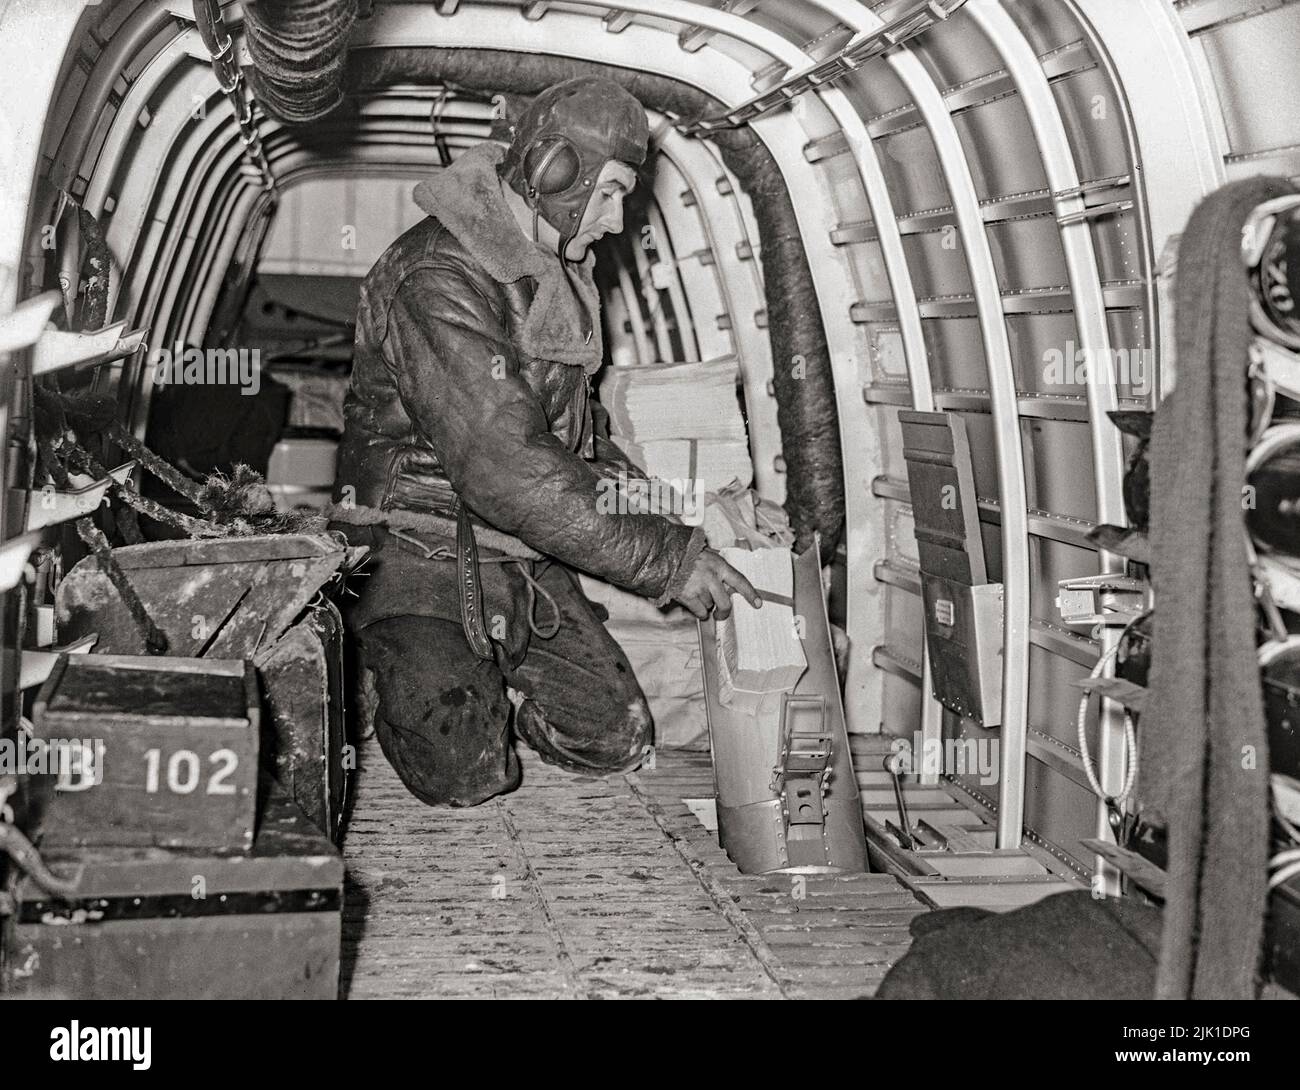 L'un des membres de l'équipage d'un Armstrong Whitworth Whitley Mark V d'un détachement de l'escadron no 102 RAF à Villeneuve/vertus, en France, démontrant comment des dépliants de propagande ont été déposés à travers la rampe de sortie des éclaires sur des sorties à feuillets. L'Armstrong Whitworth Whitley était l'un des trois bombardiers britanniques de première ligne à deux moteurs en service avec la Royal Air Force au début de la Seconde Guerre mondiale et a participé au premier raid de bombardement de la RAF sur le territoire allemand. Elle est restée partie intégrante de l'offensive des bombardiers britanniques jusqu'à l'introduction de « lourdes » à quatre moteurs. Banque D'Images